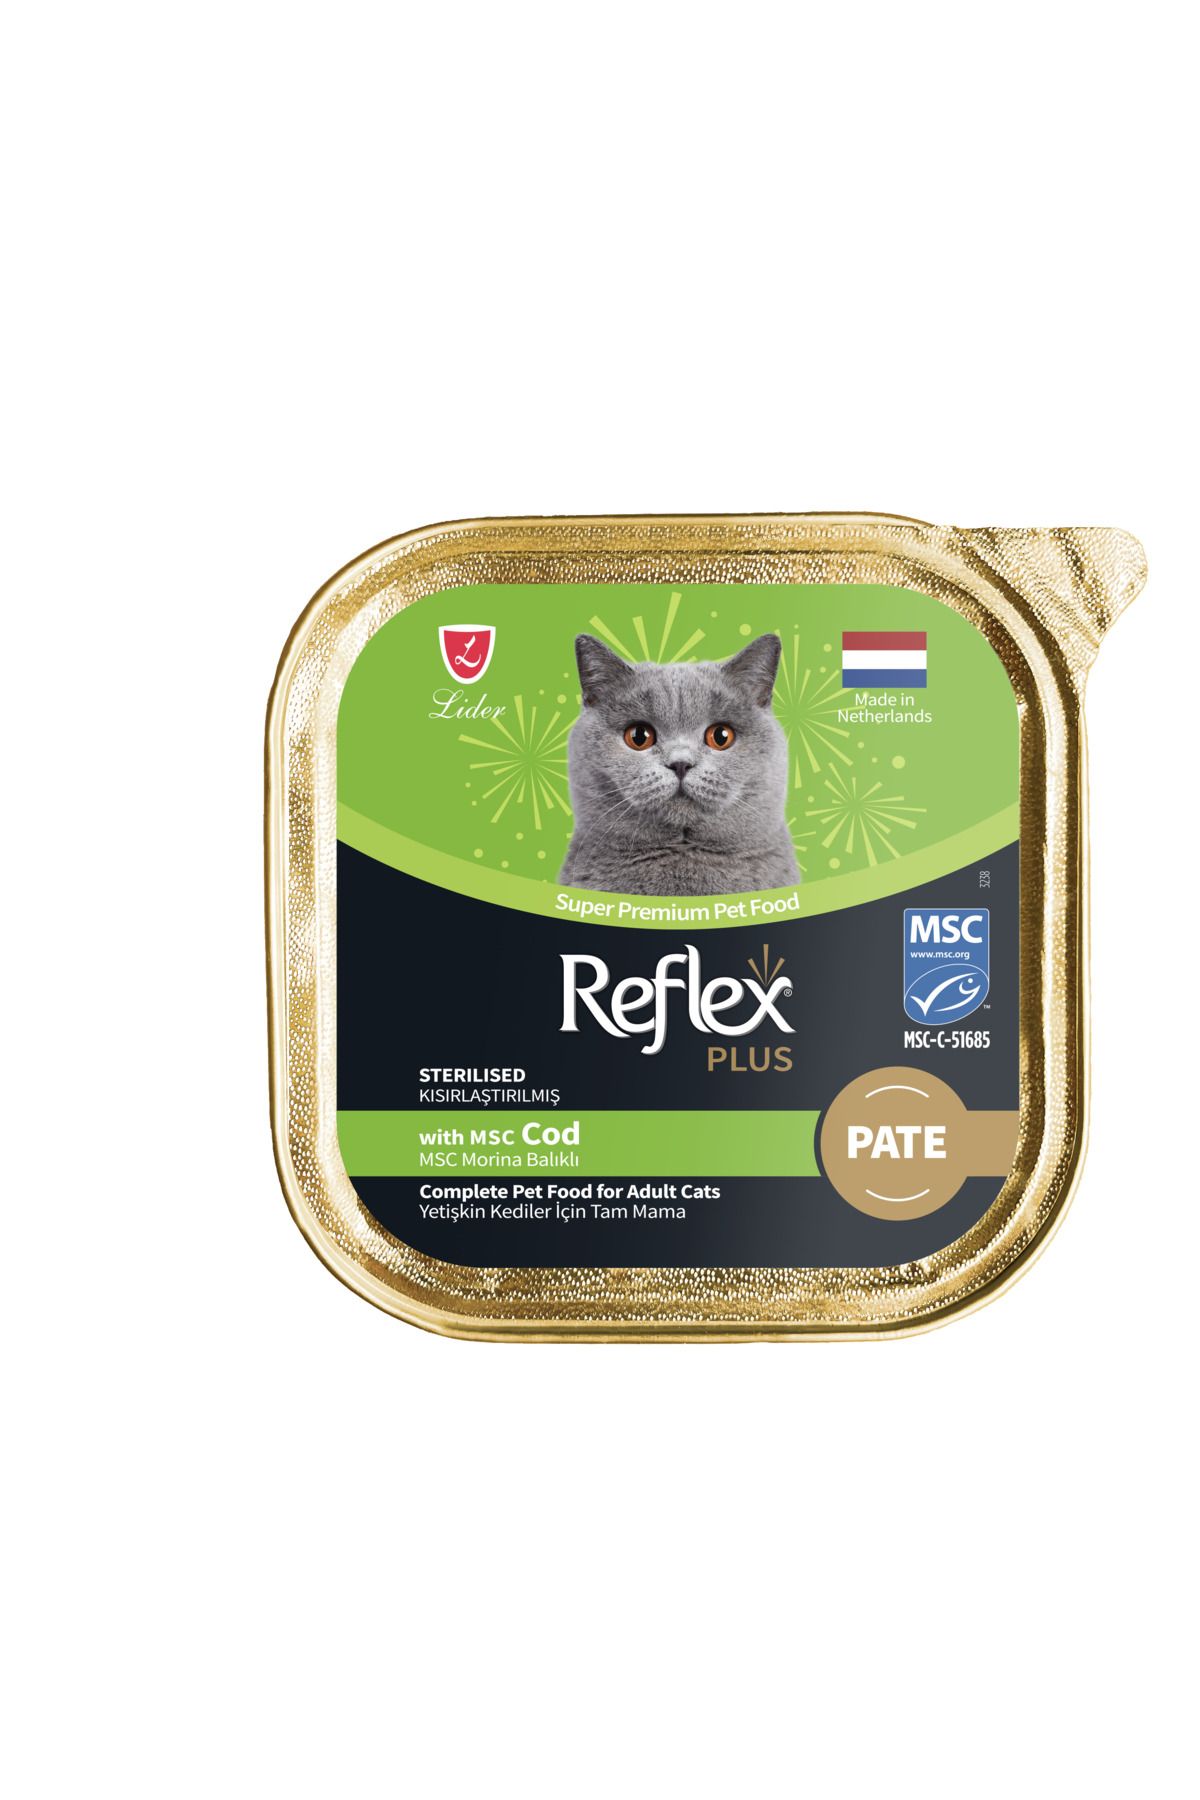 Reflex Plus Alu Tray 85 gr Morina Balıklı Kıyılmış Pate Kısır Kedi Yaş Mama